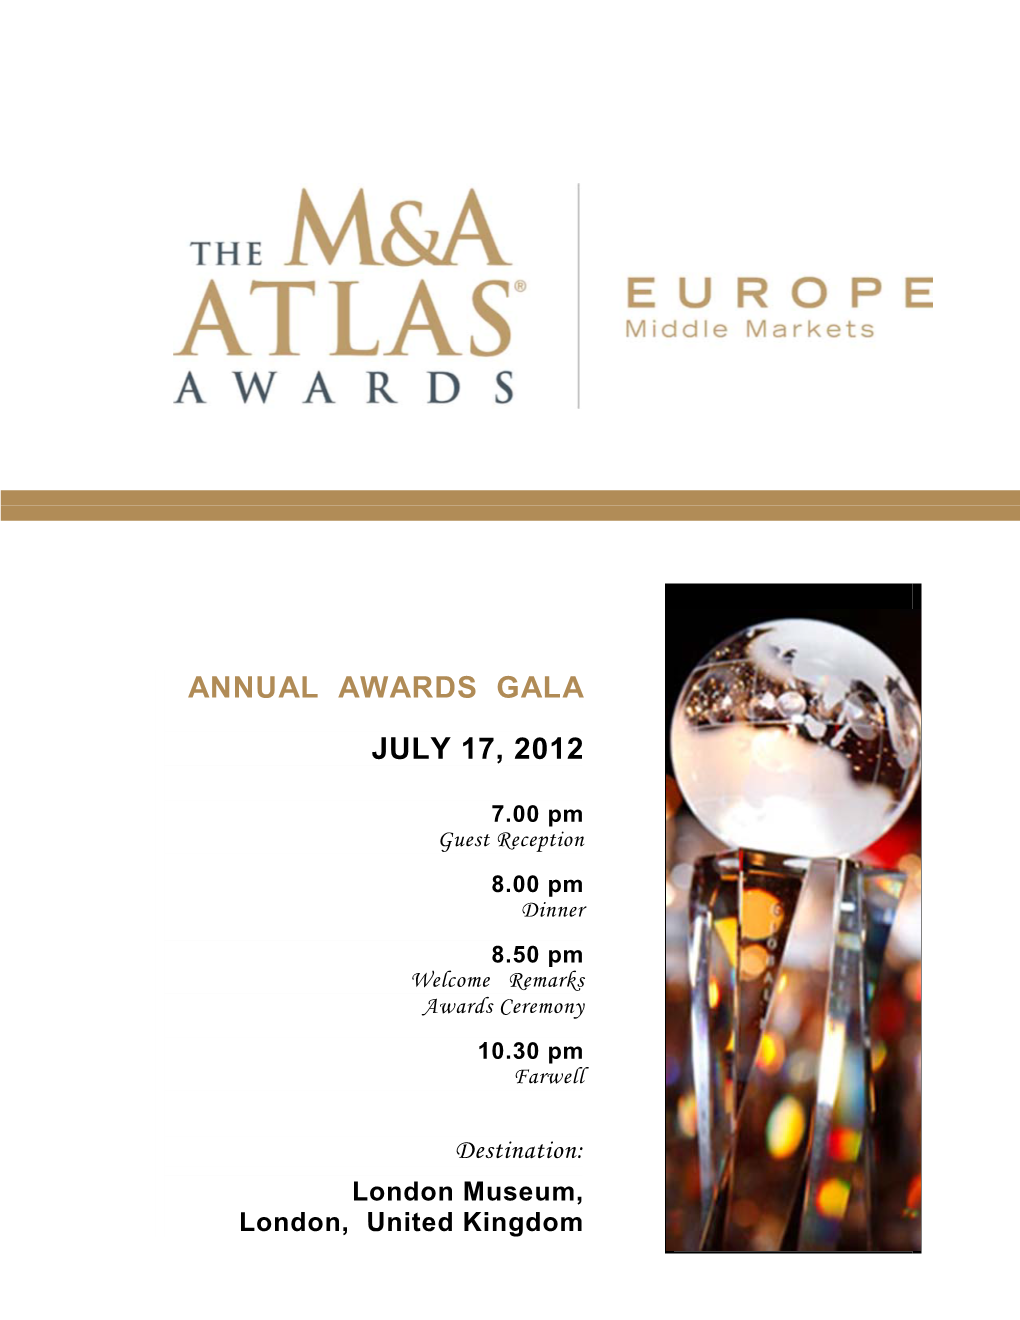 Announcing EUROPE M&A ATLAS AWARDS